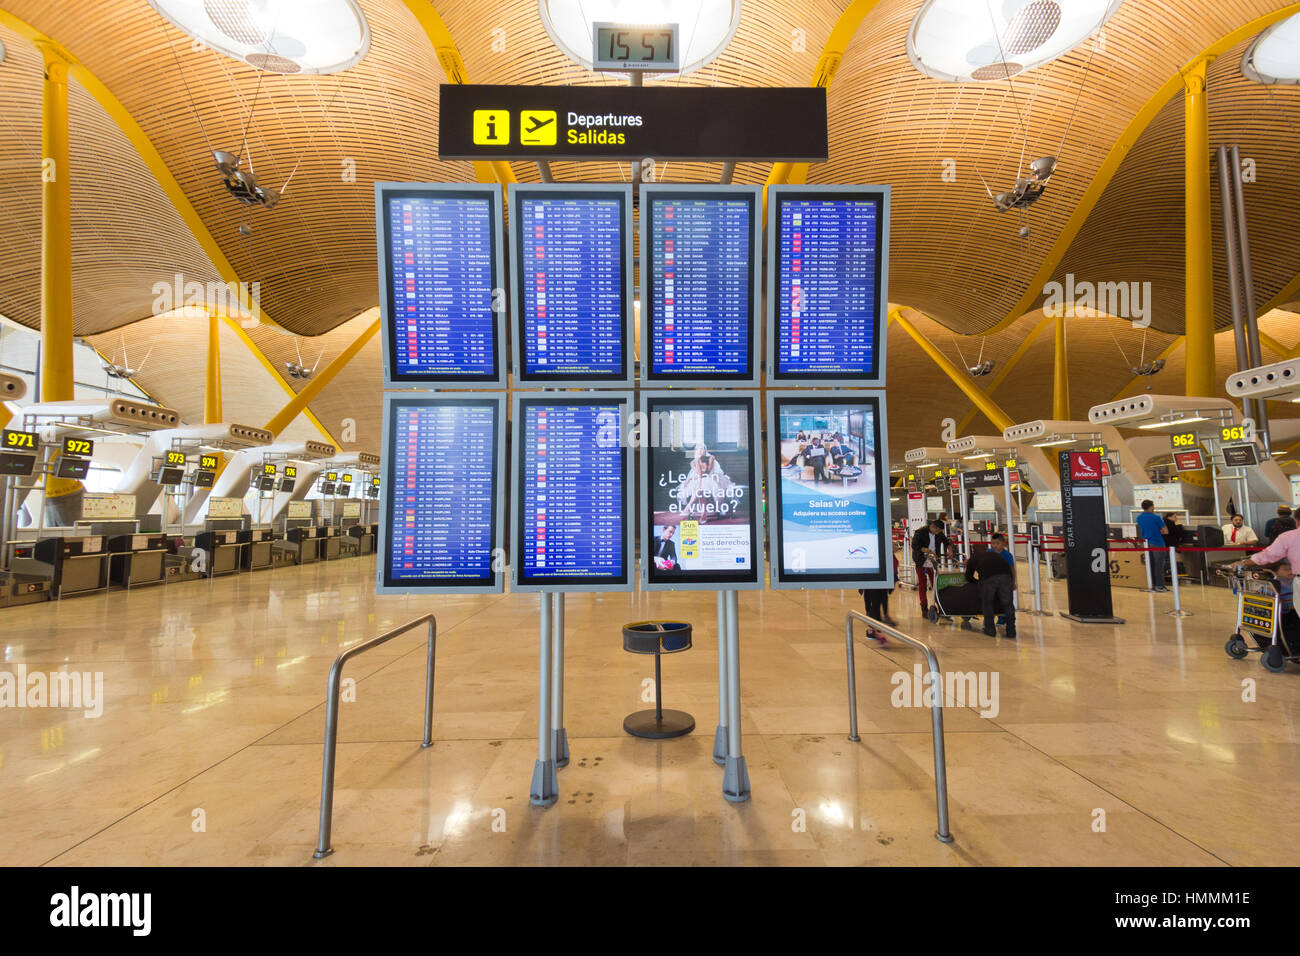 MADRID - Okt 11: Abflüge Informationstafeln am Flughafen Madrid-Barajas am 11. Oktober 2014 in Madrid, Spanien.  Der Flughafen ist, dass große Spaniens Stockfoto